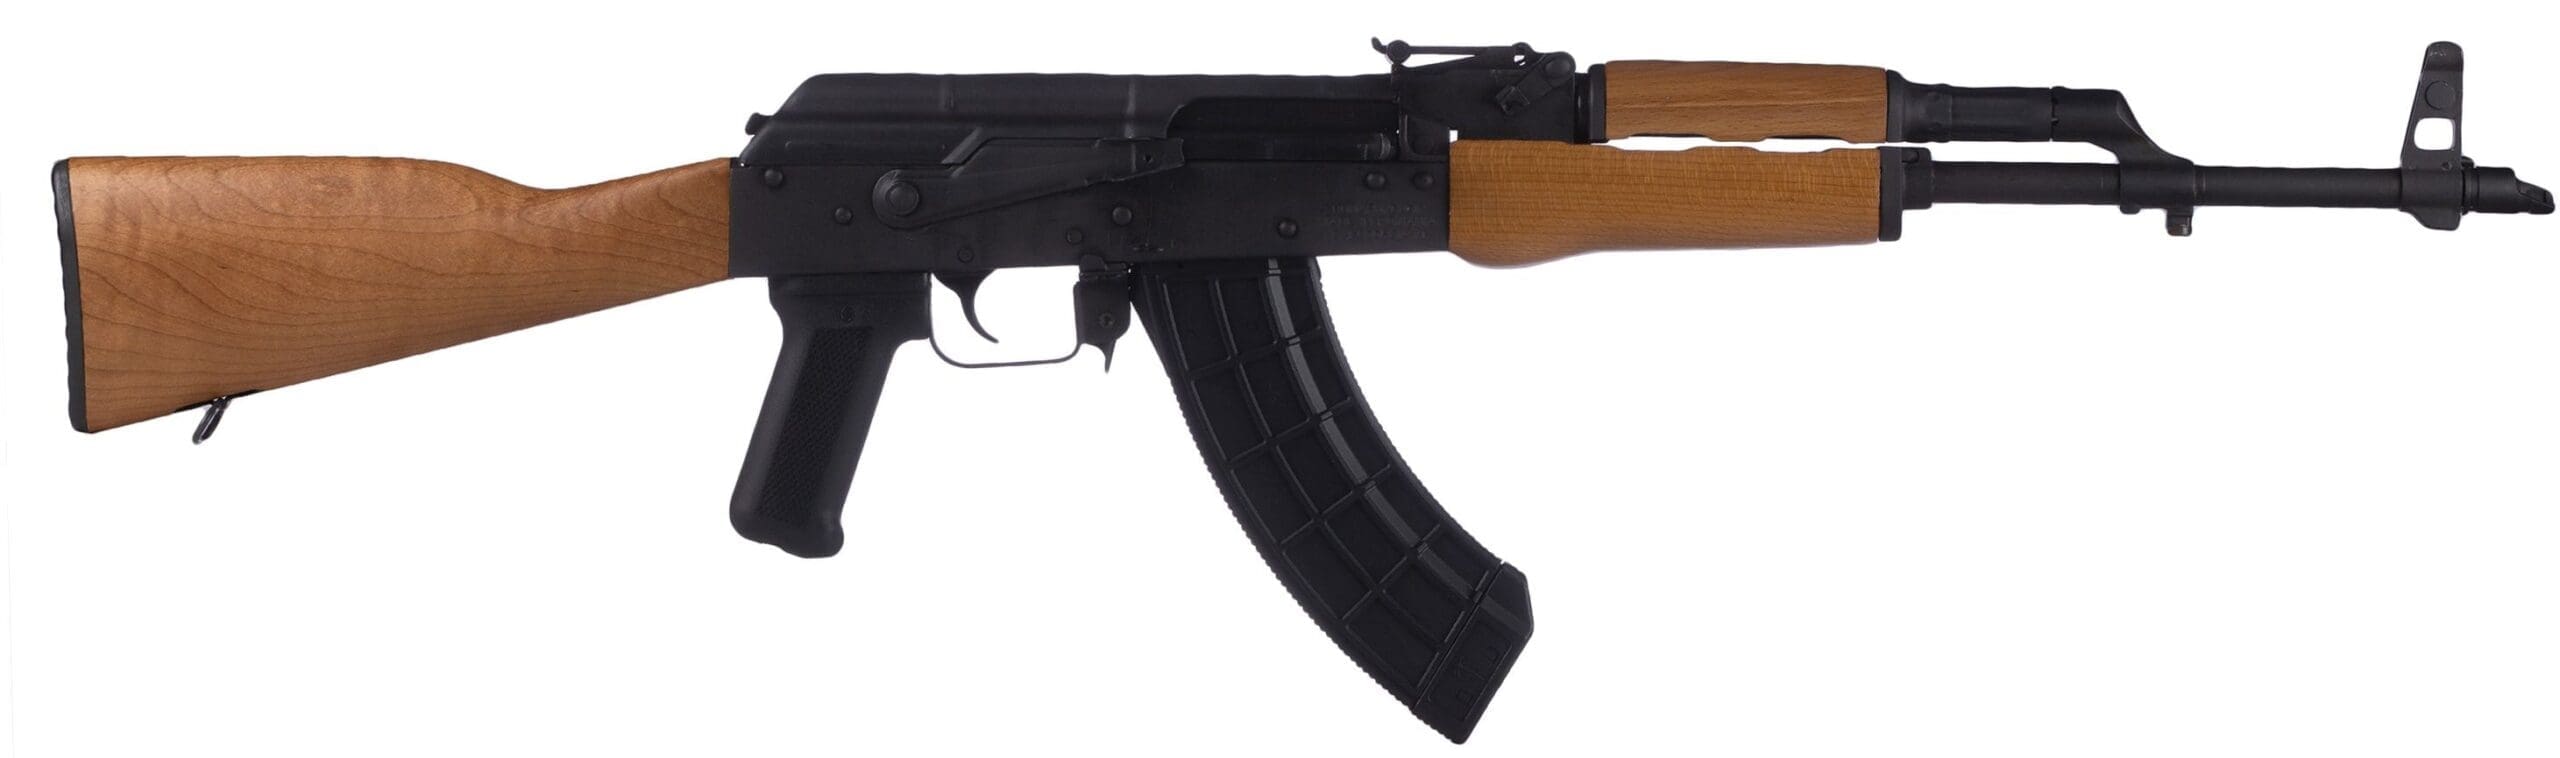 AK 47 accessories kit